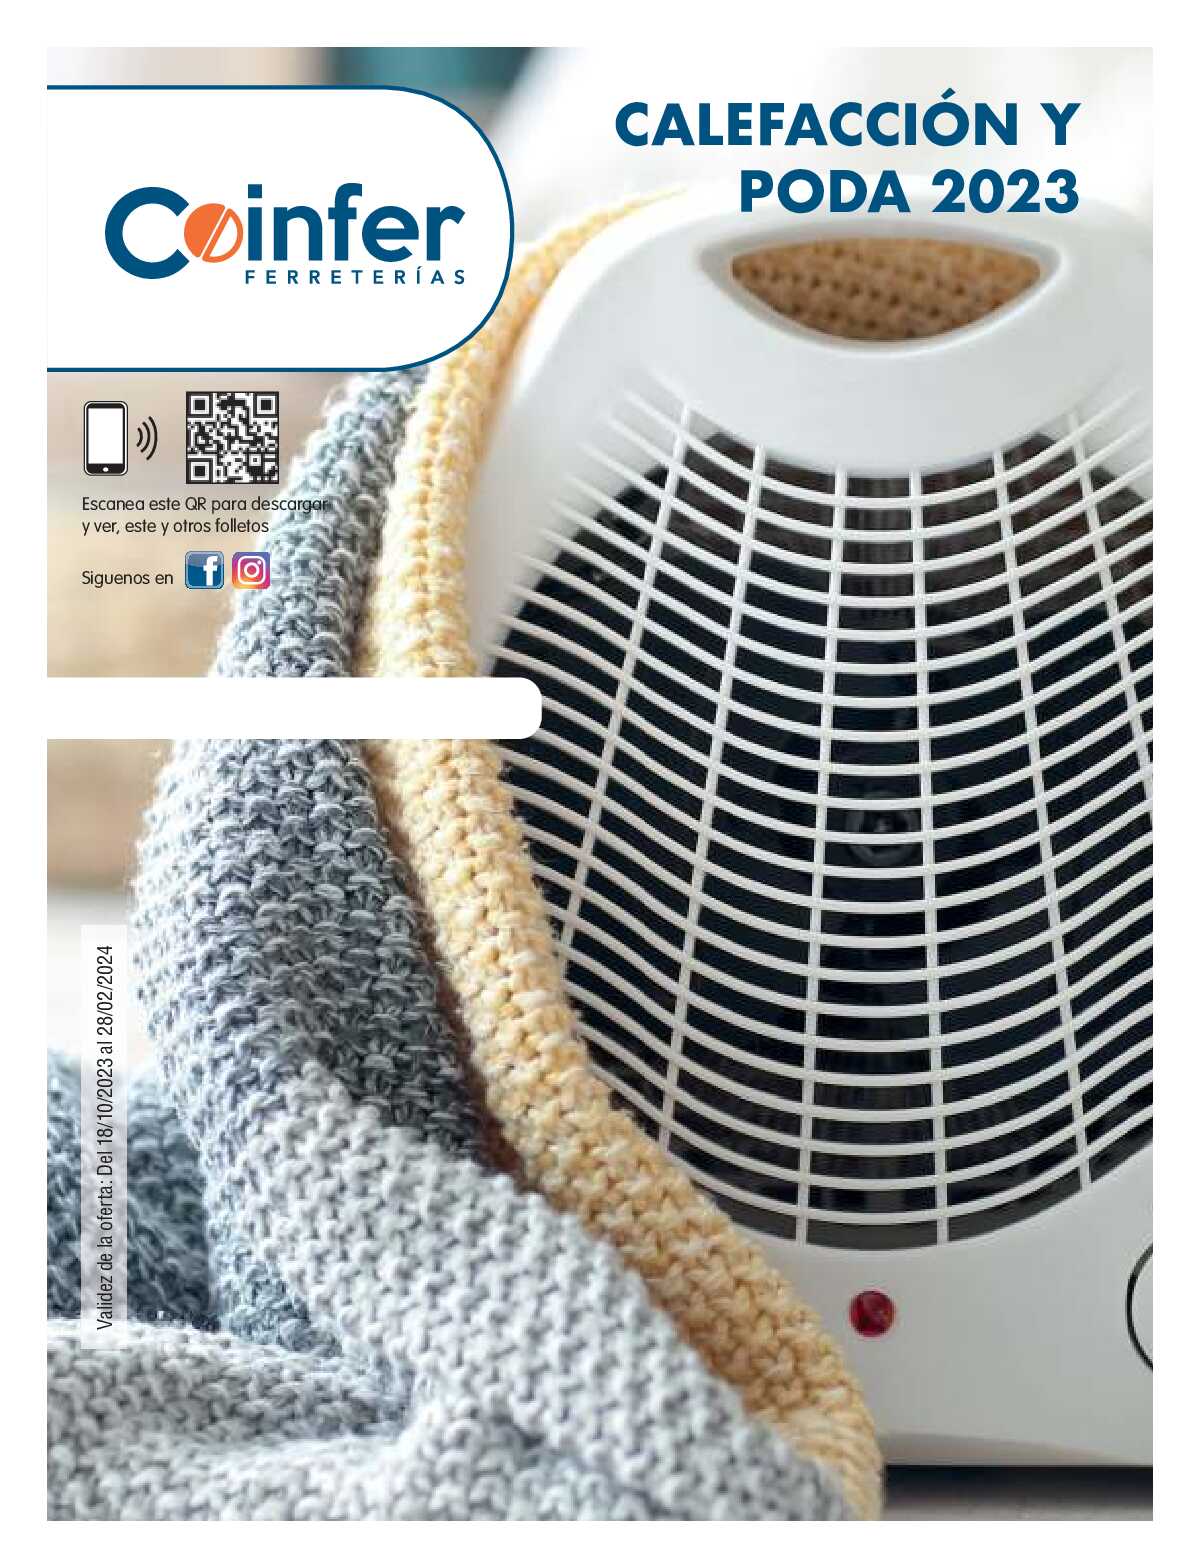 Calefacción y poda Coinfer. Página 01